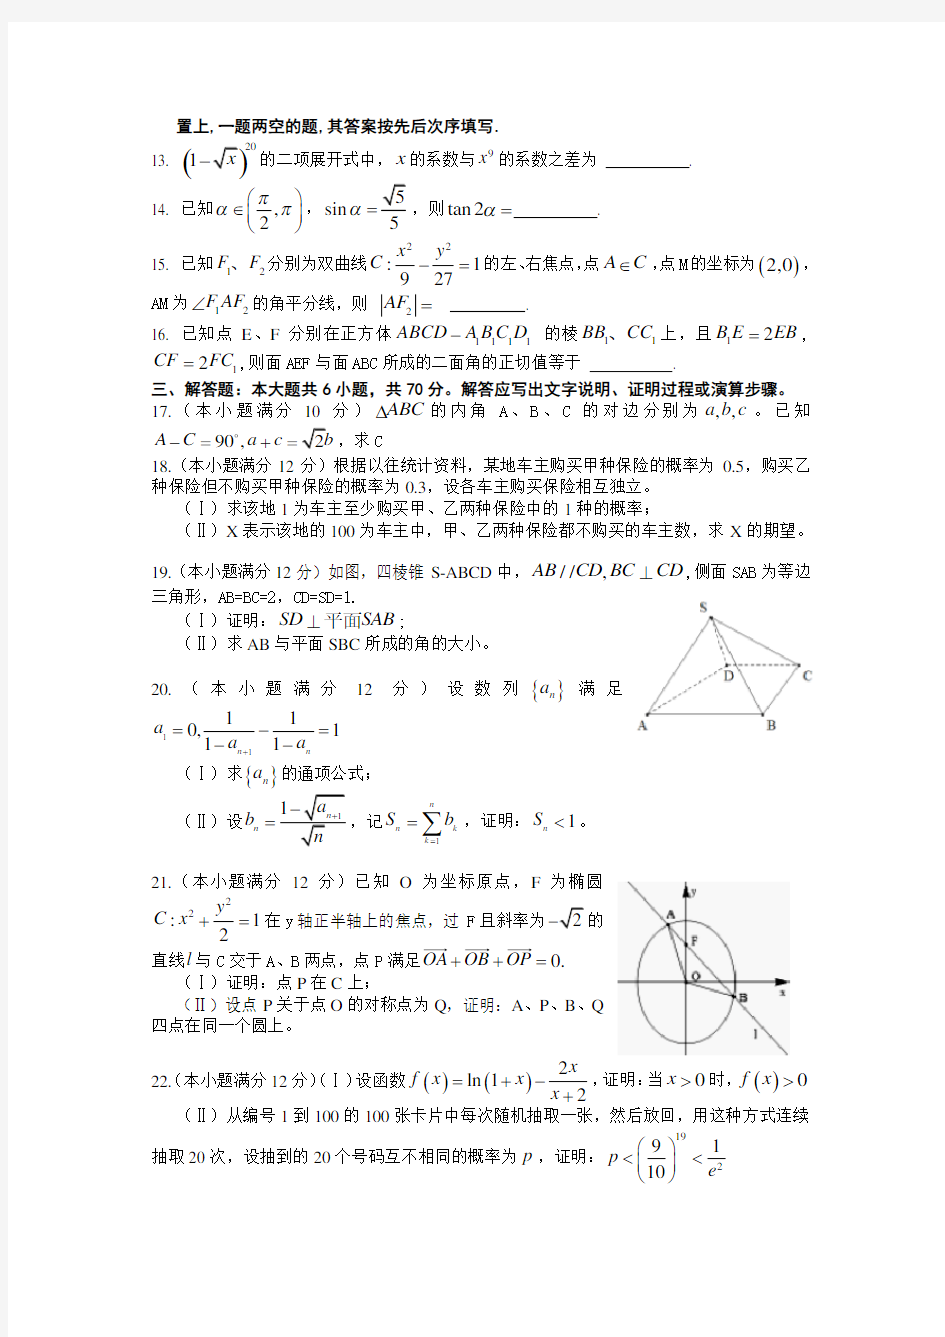 2011年高考理科数学试卷及答案-甘肃省